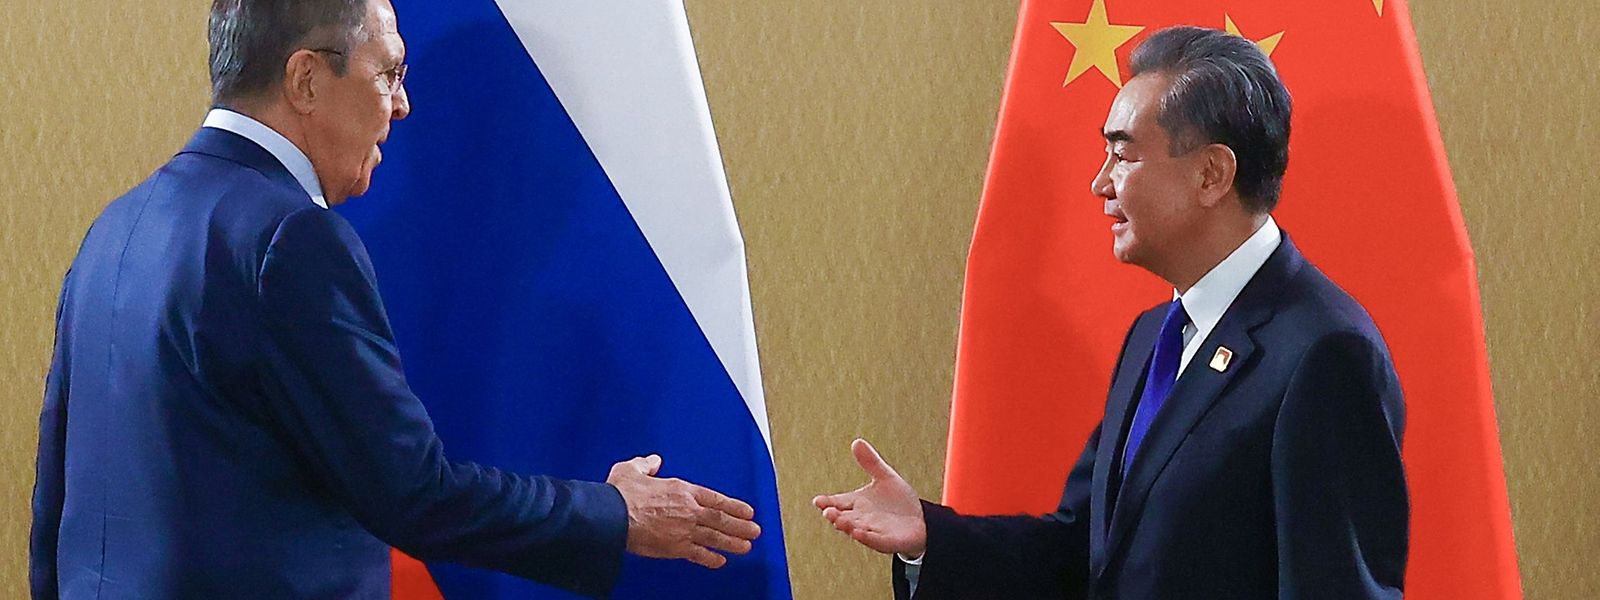 Russlands Außenminister Sergej Lawrow (links), den die westlichen Amtskollegen weitgehend ignorierten, wurde vom chinesischen Konterpart Wang Yi freundlich begrüßt.